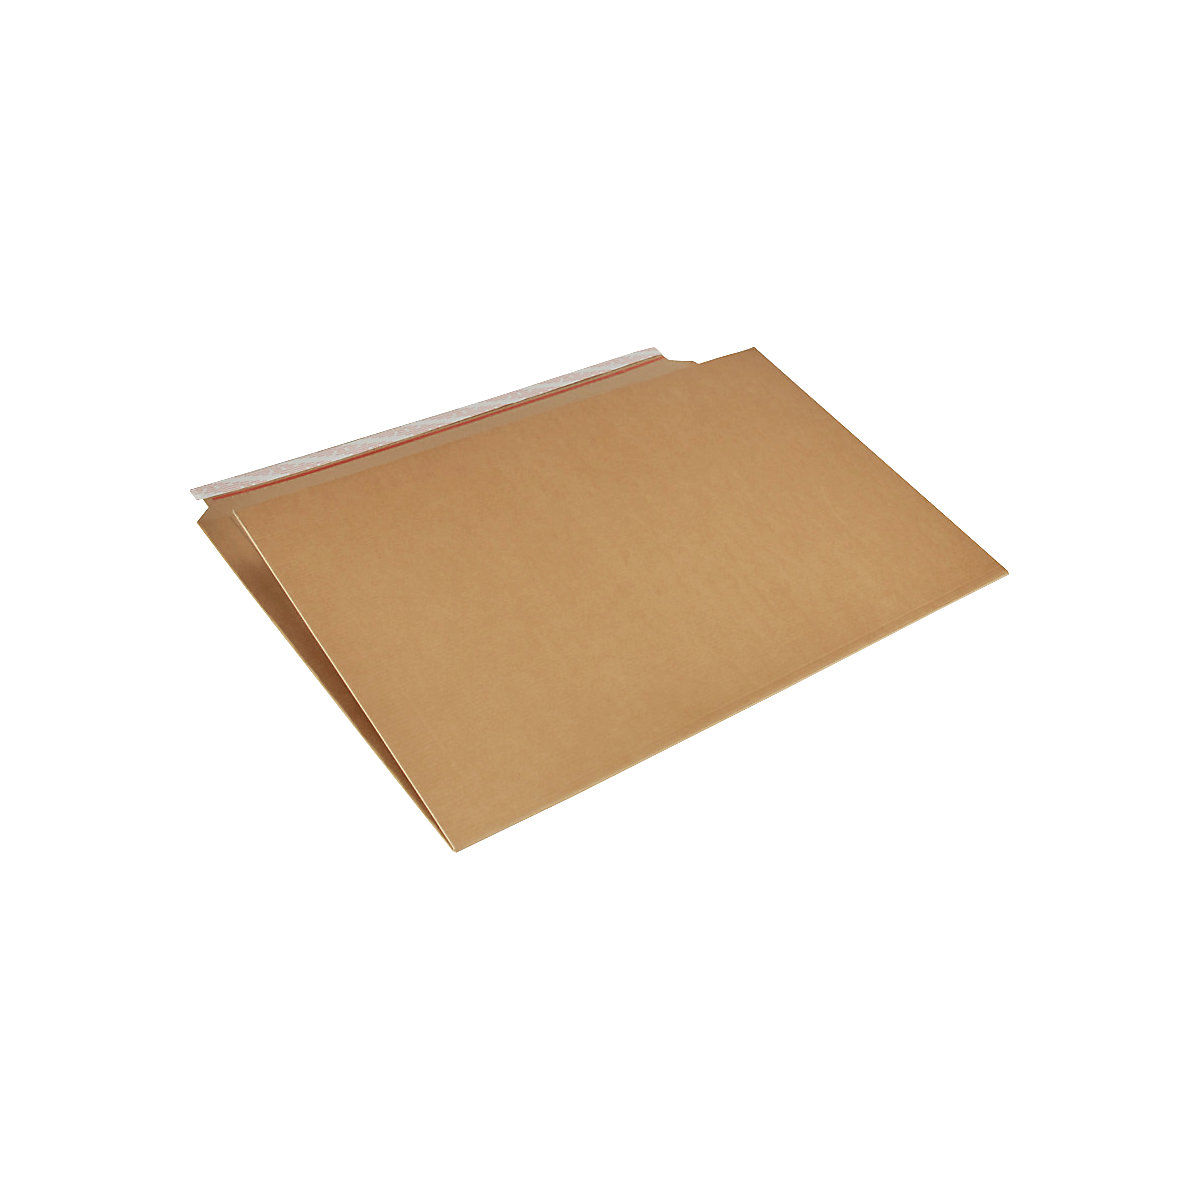 Imballaggio per libri Multistar – flow, marrone, lungh. x largh. 770 x 520 mm, a partire da 80 pz.-3